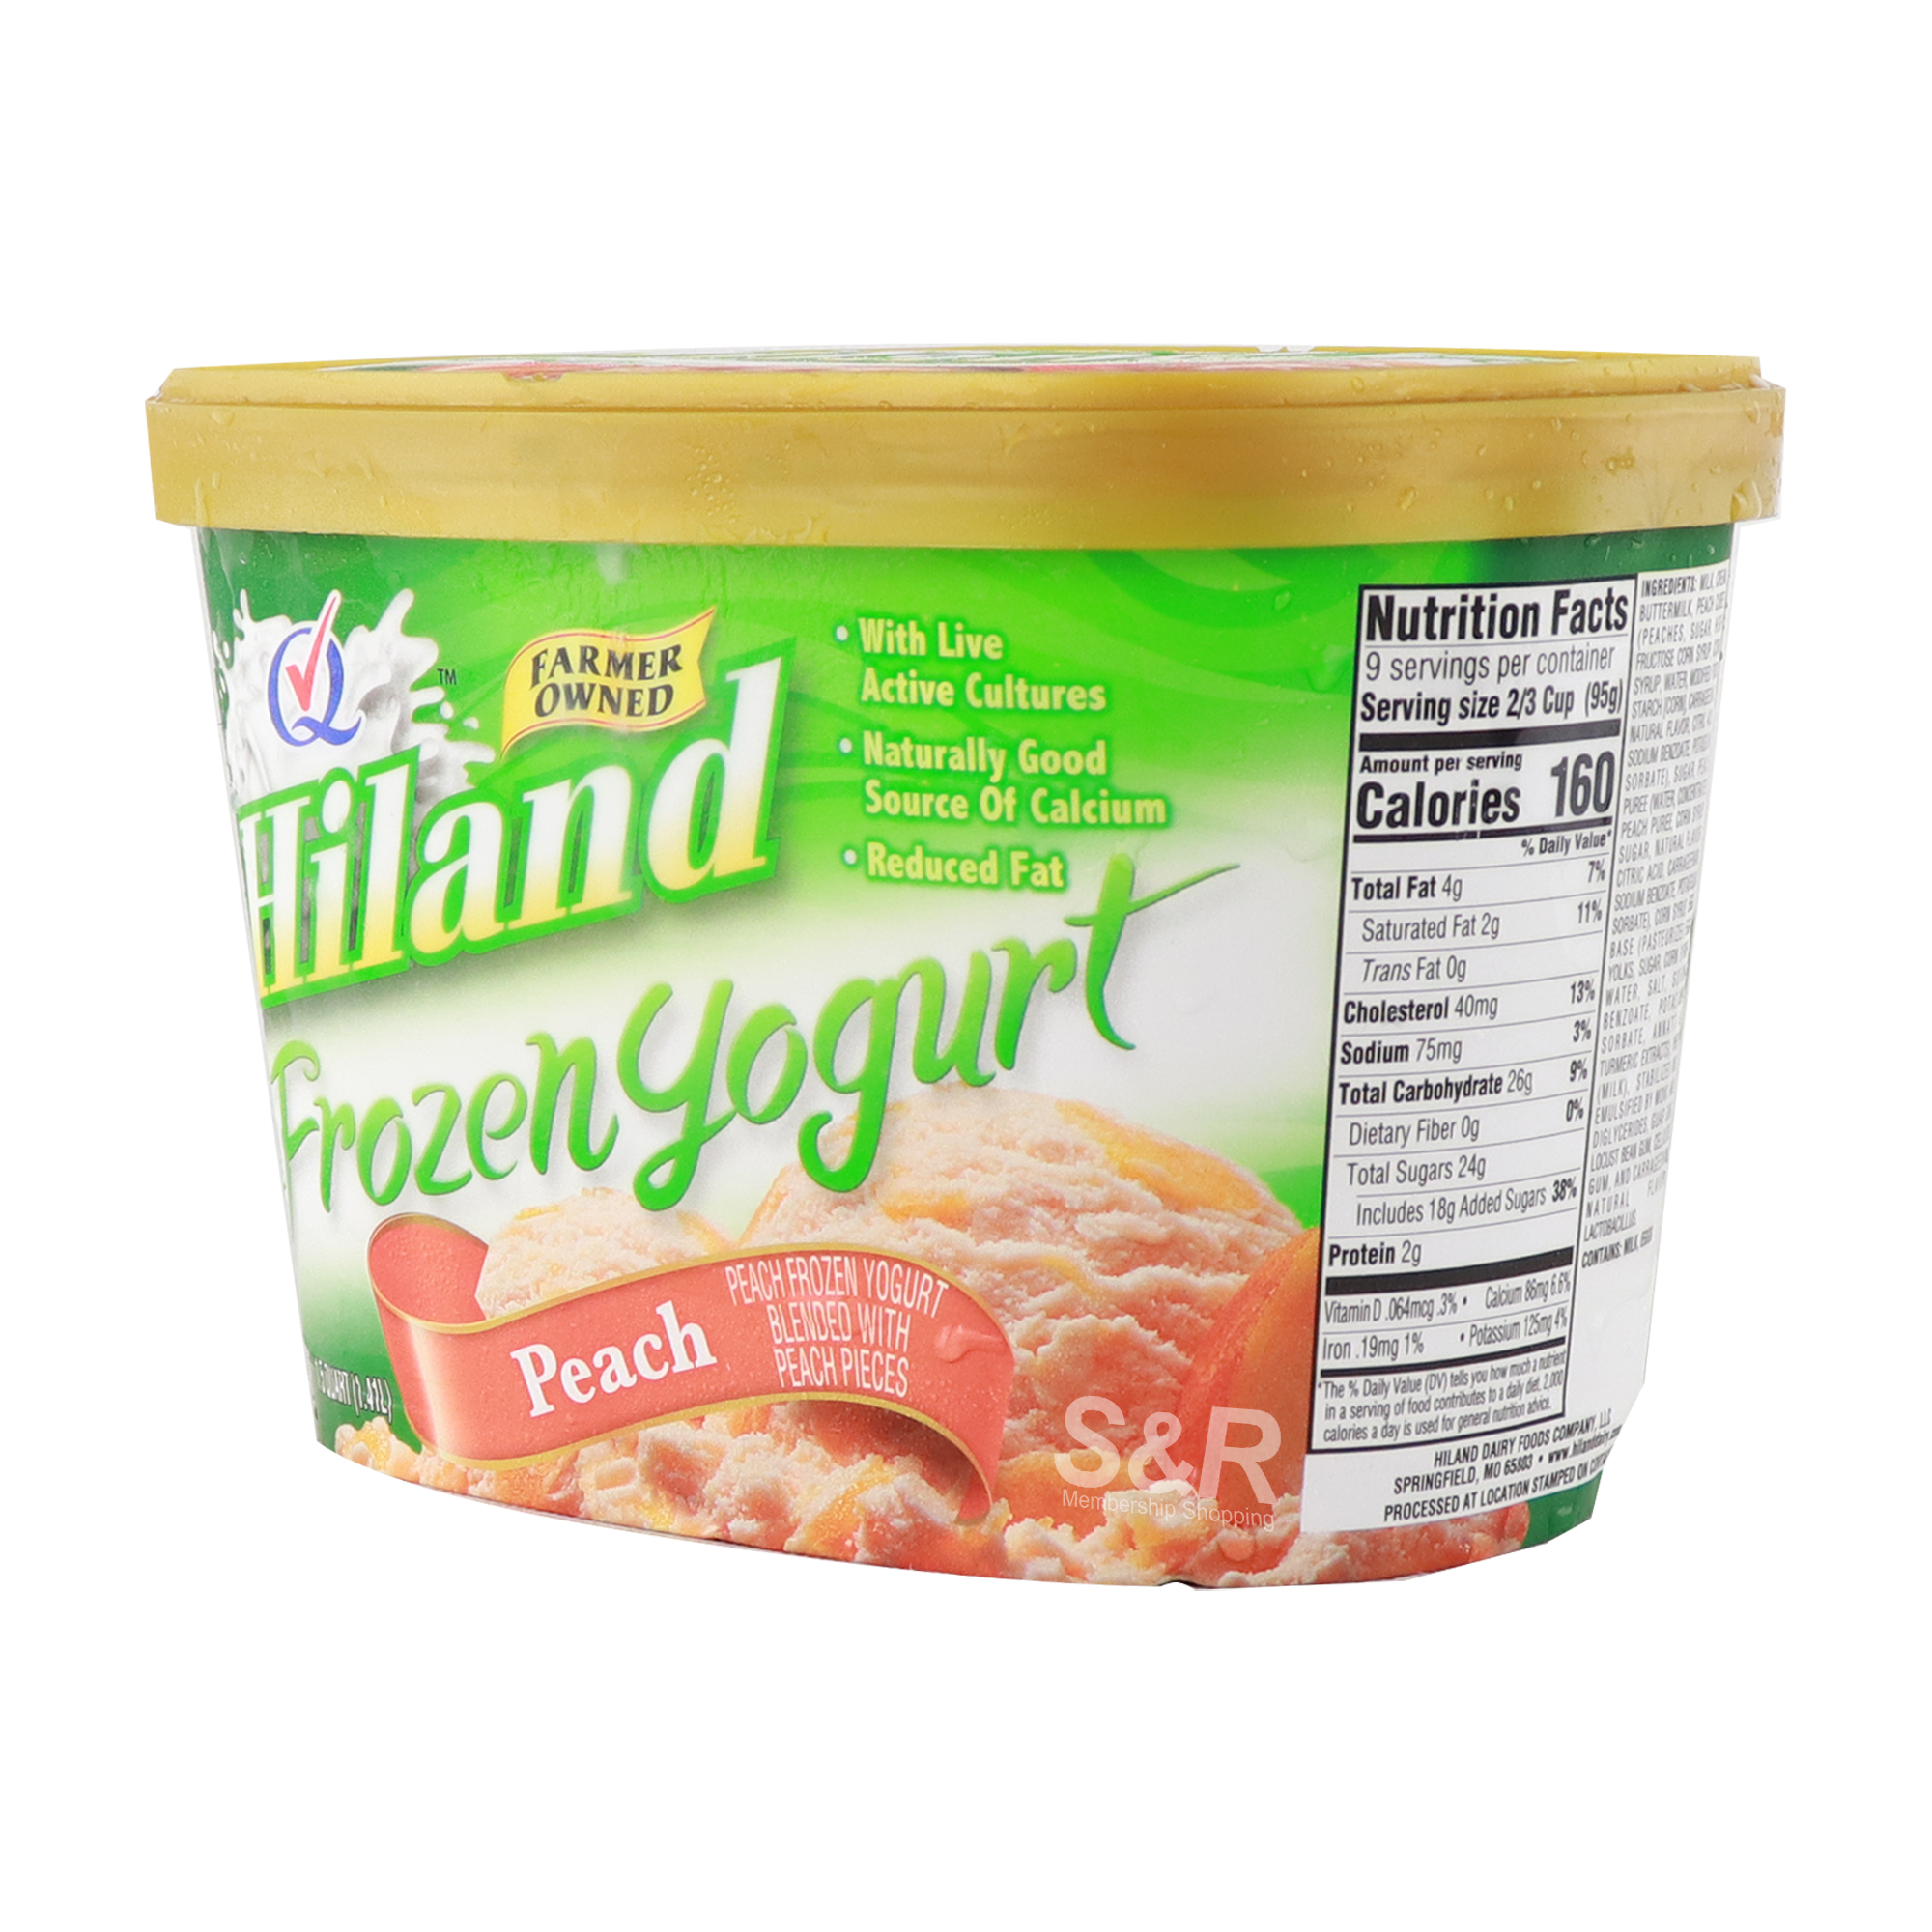 Premium Frozen Yogurt